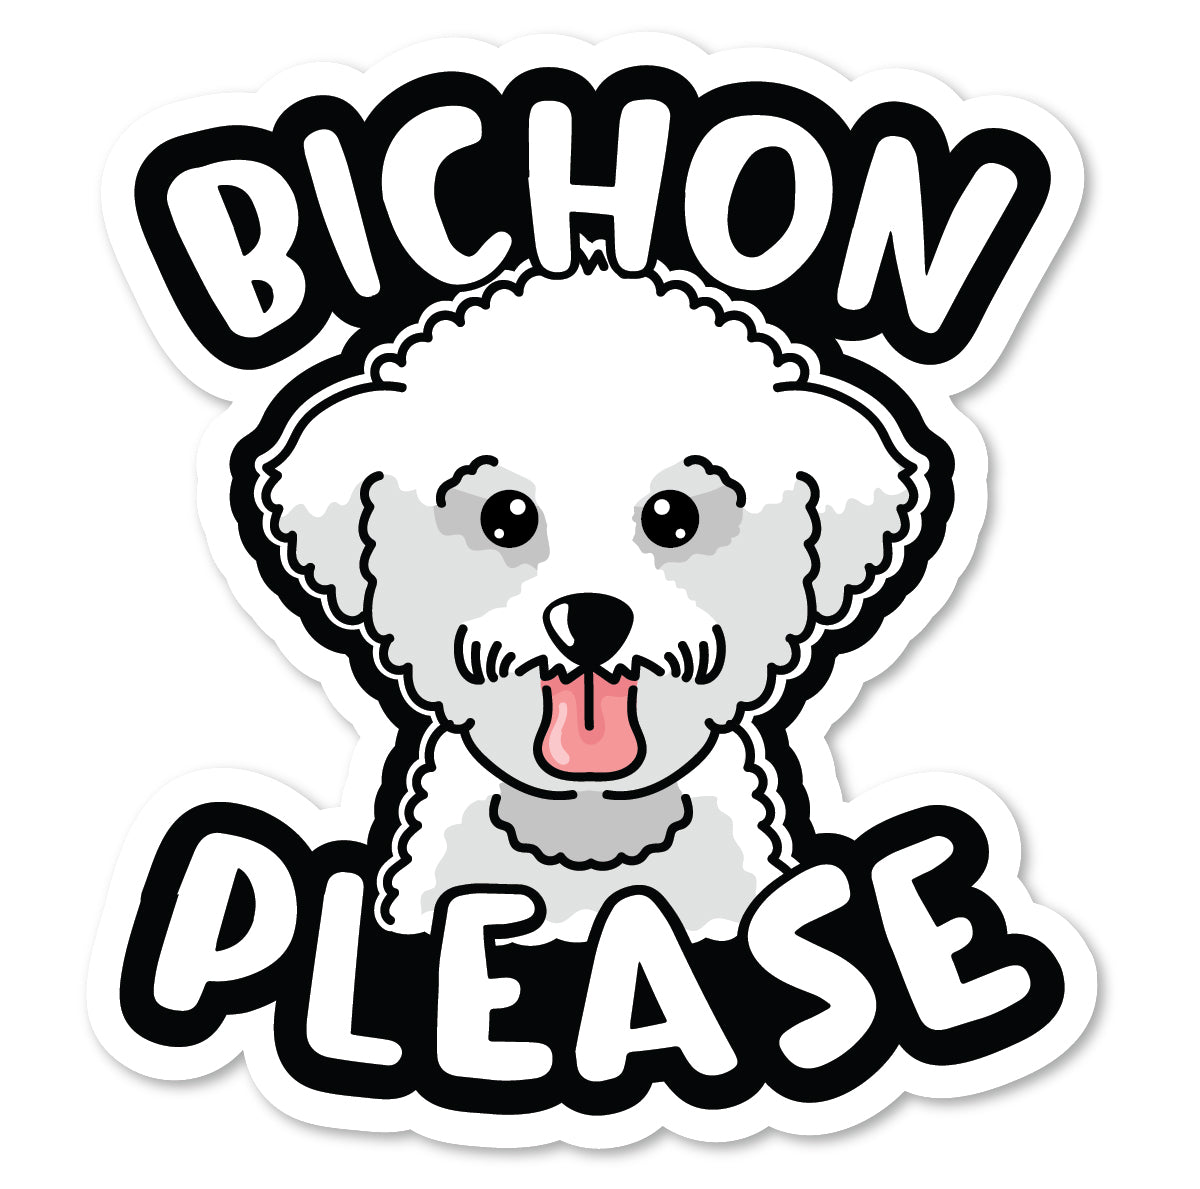 SP-080 | Bichon Please